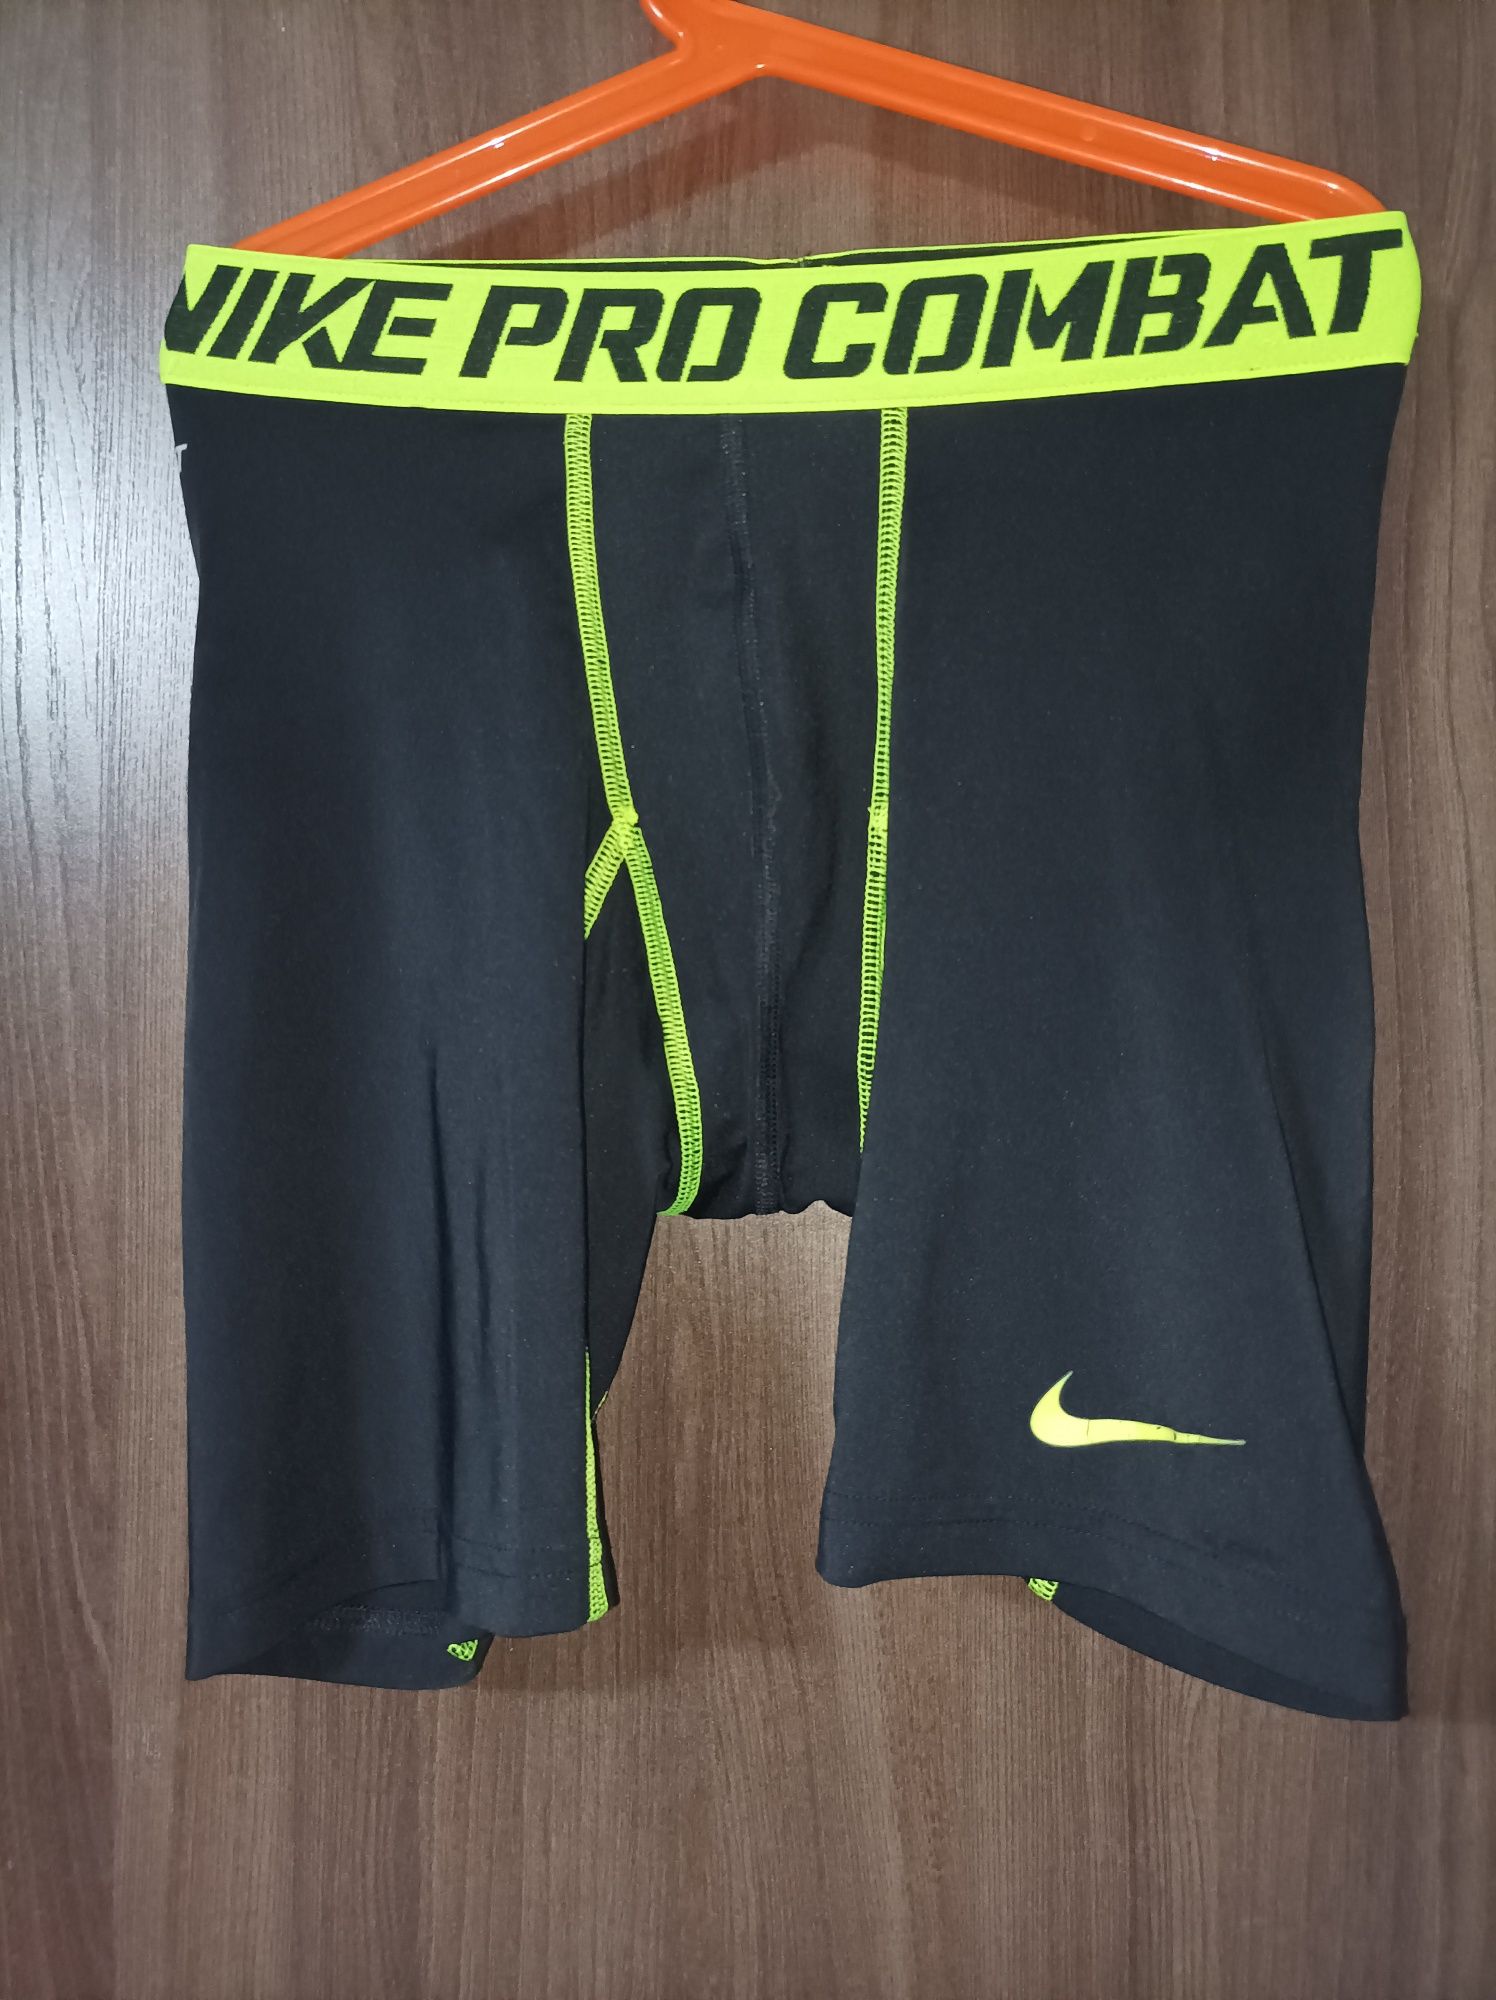 Шорты, бриджи компрессионные Umbro,Nike Pro Combat